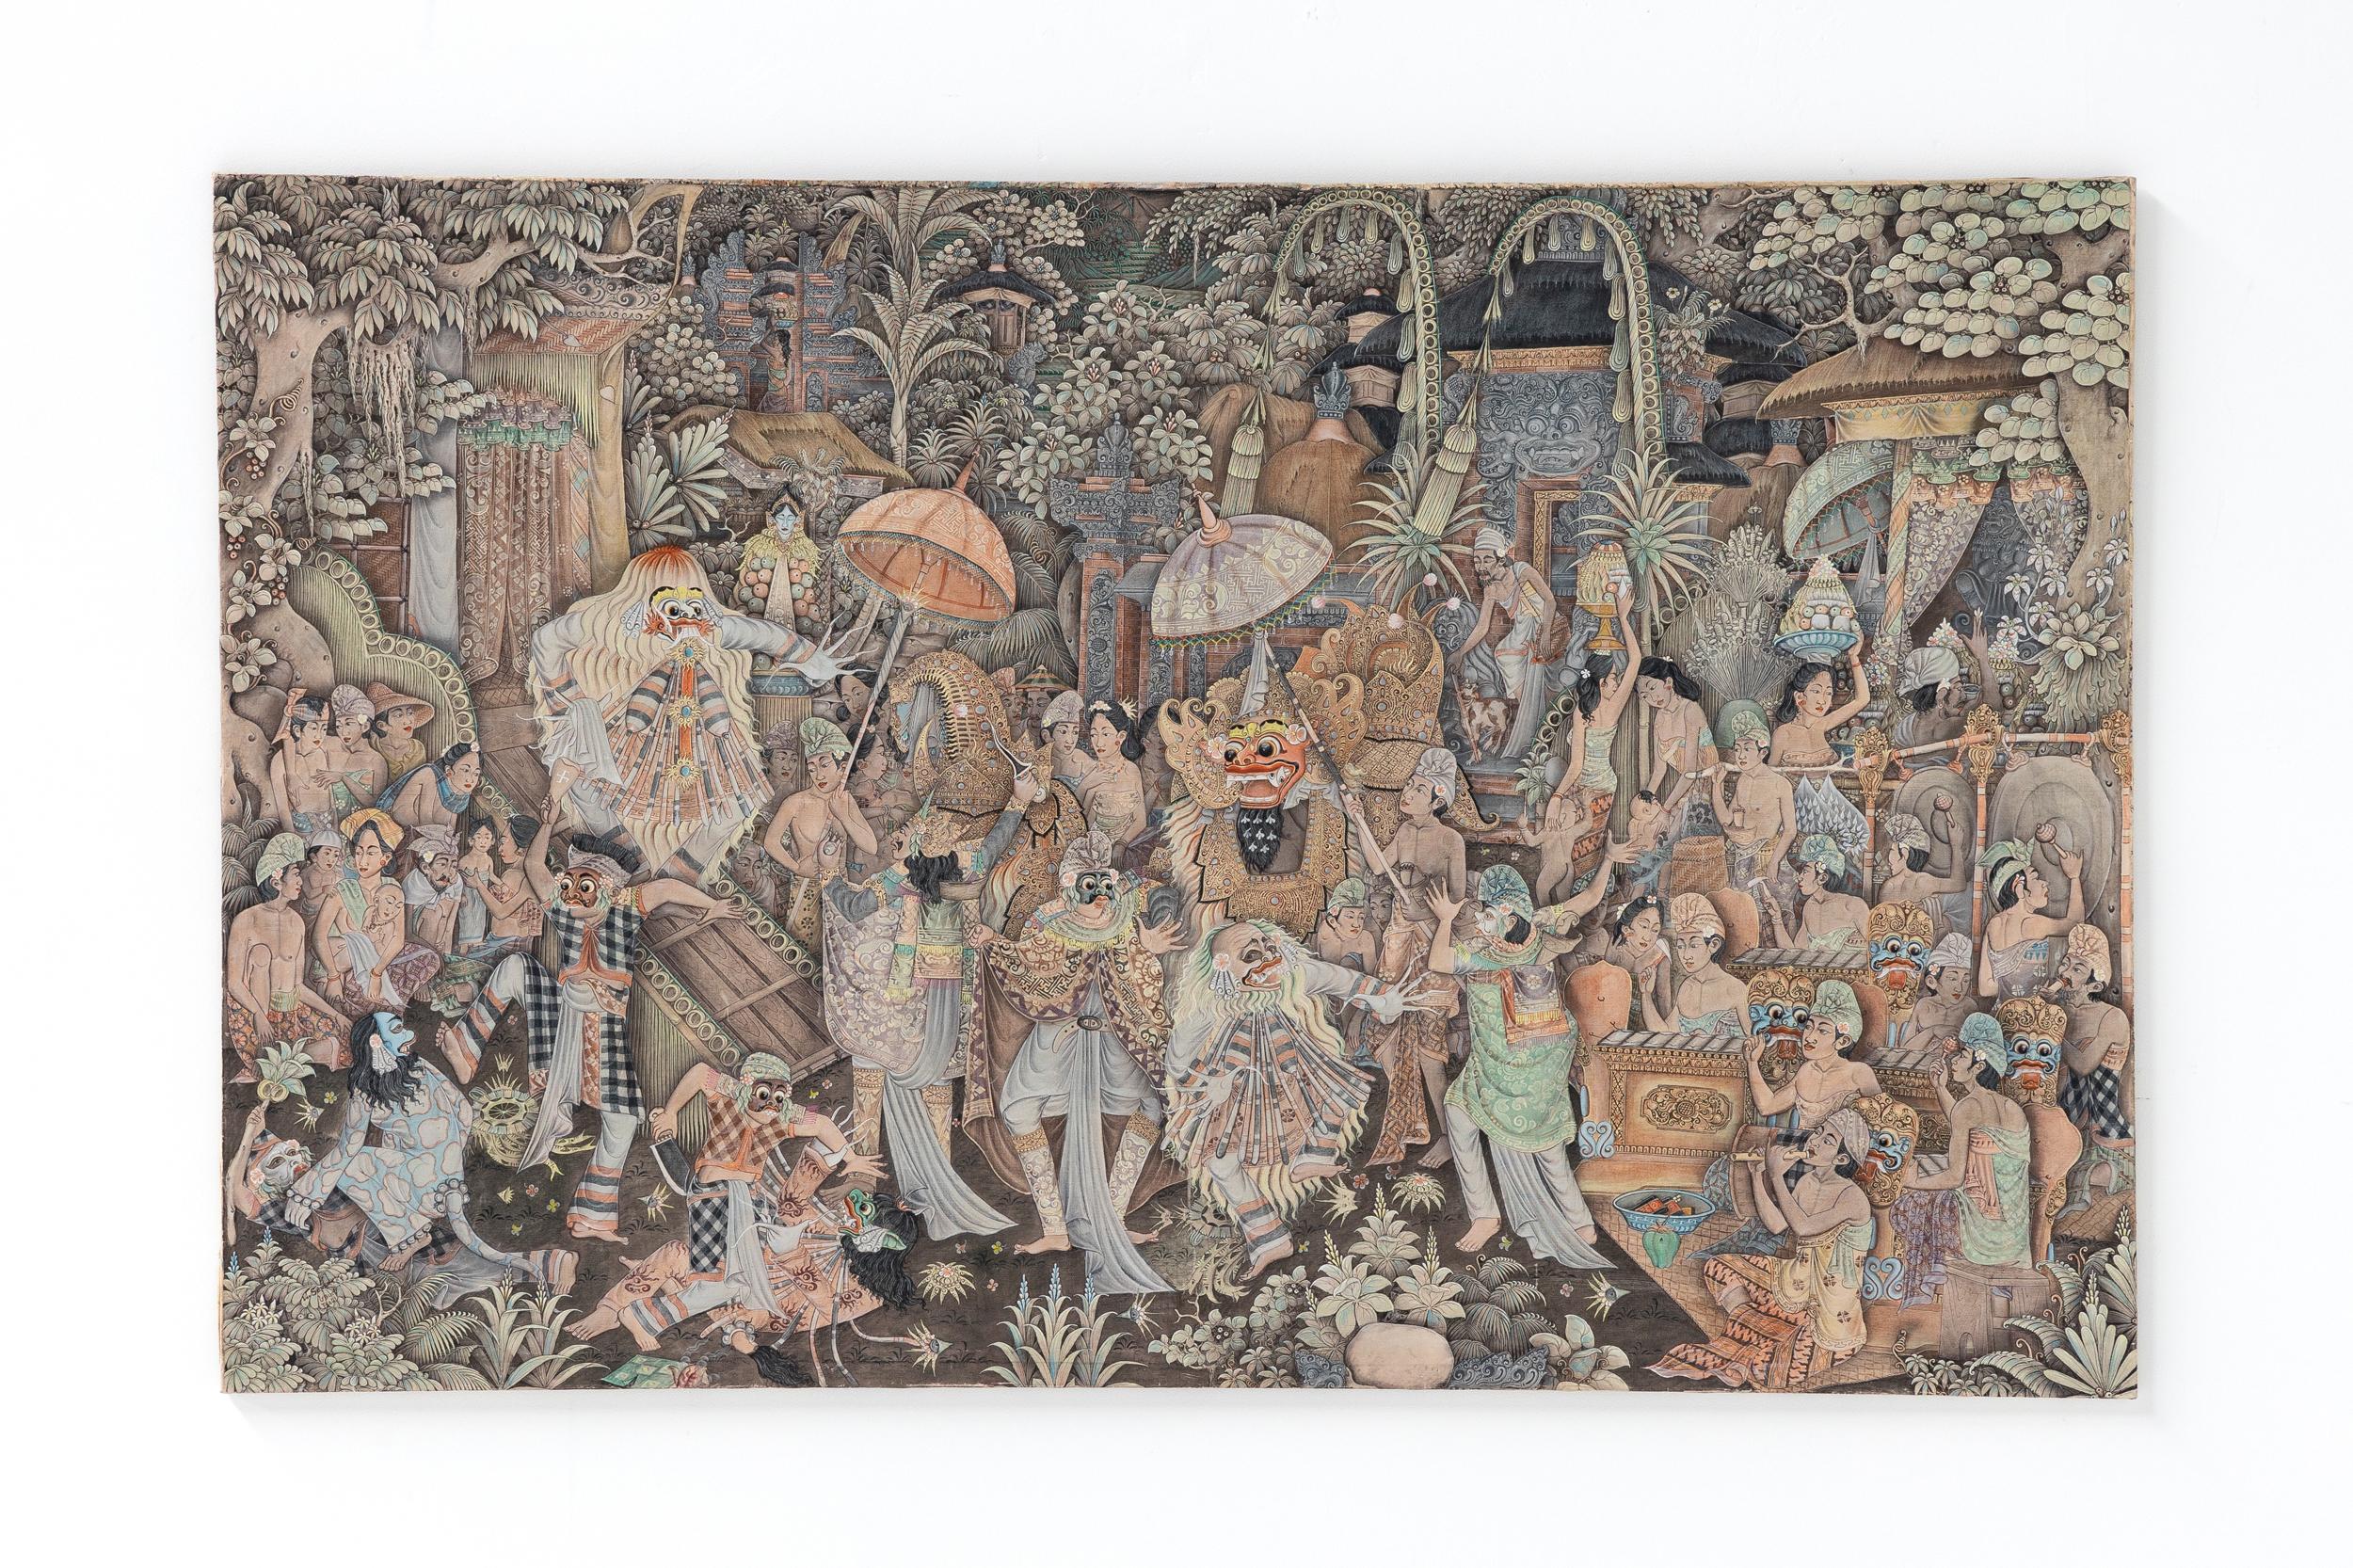 Pintura balinesa; Obra de arte; Década de 1980; Arte balinés; Bali; Arte popular; 

Pintura balinesa, de la década de 1980. El arte balinés ha recurrido tradicionalmente a la religión (hinduismo), a la gente y a la propia isla. El arte de Bali